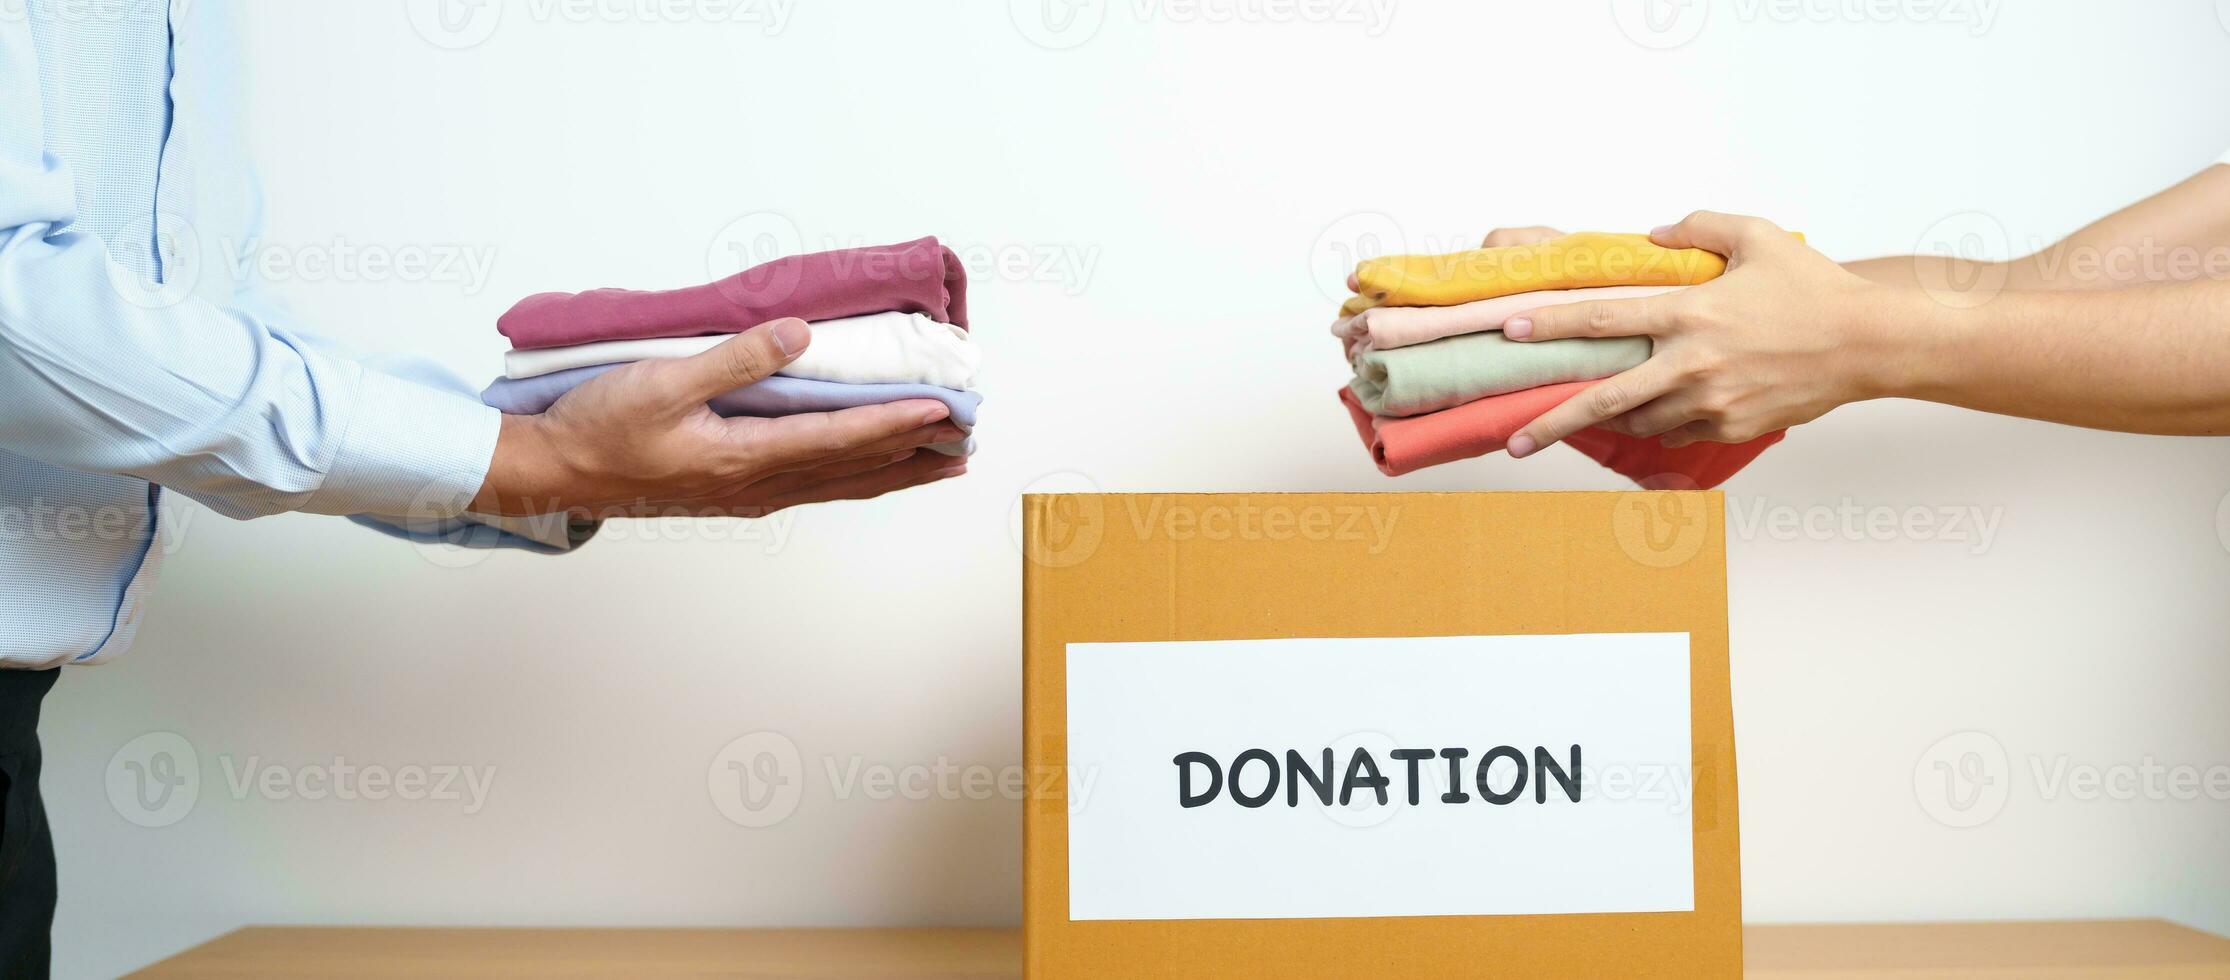 bijdrage, liefdadigheid, vrijwilliger, geven en levering concept. mensen schenken kleren in bijdrage doos Bij huis of kantoor voor ondersteuning en helpen arm, vluchteling en dakloos mensen. kopiëren ruimte voor tekst foto